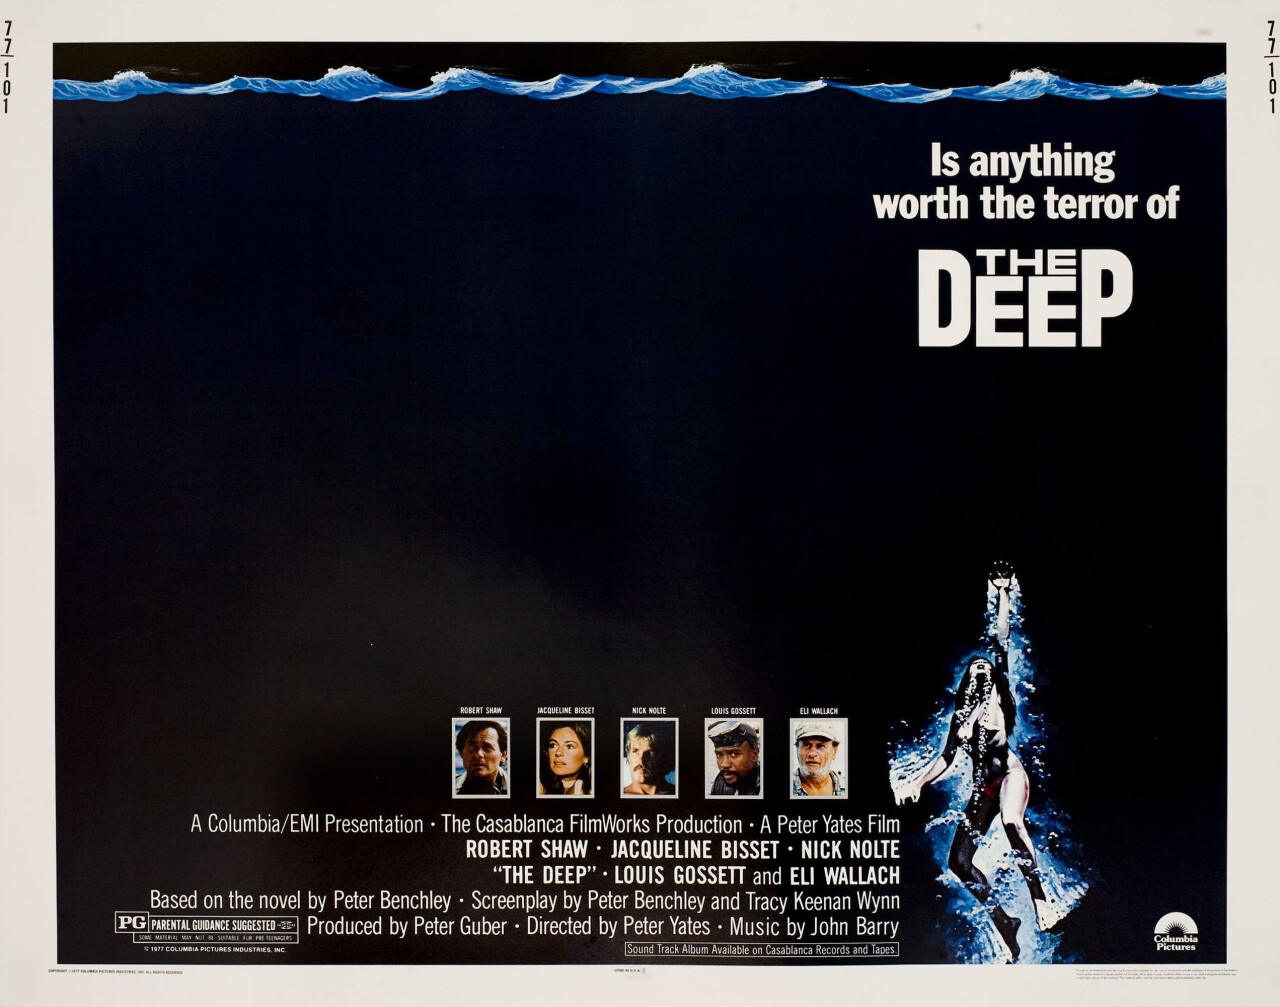 Бездна (The Deep, 1977), режиссёр Питер Йейтс, американский постер к фильму (ужасы, 1977 год)